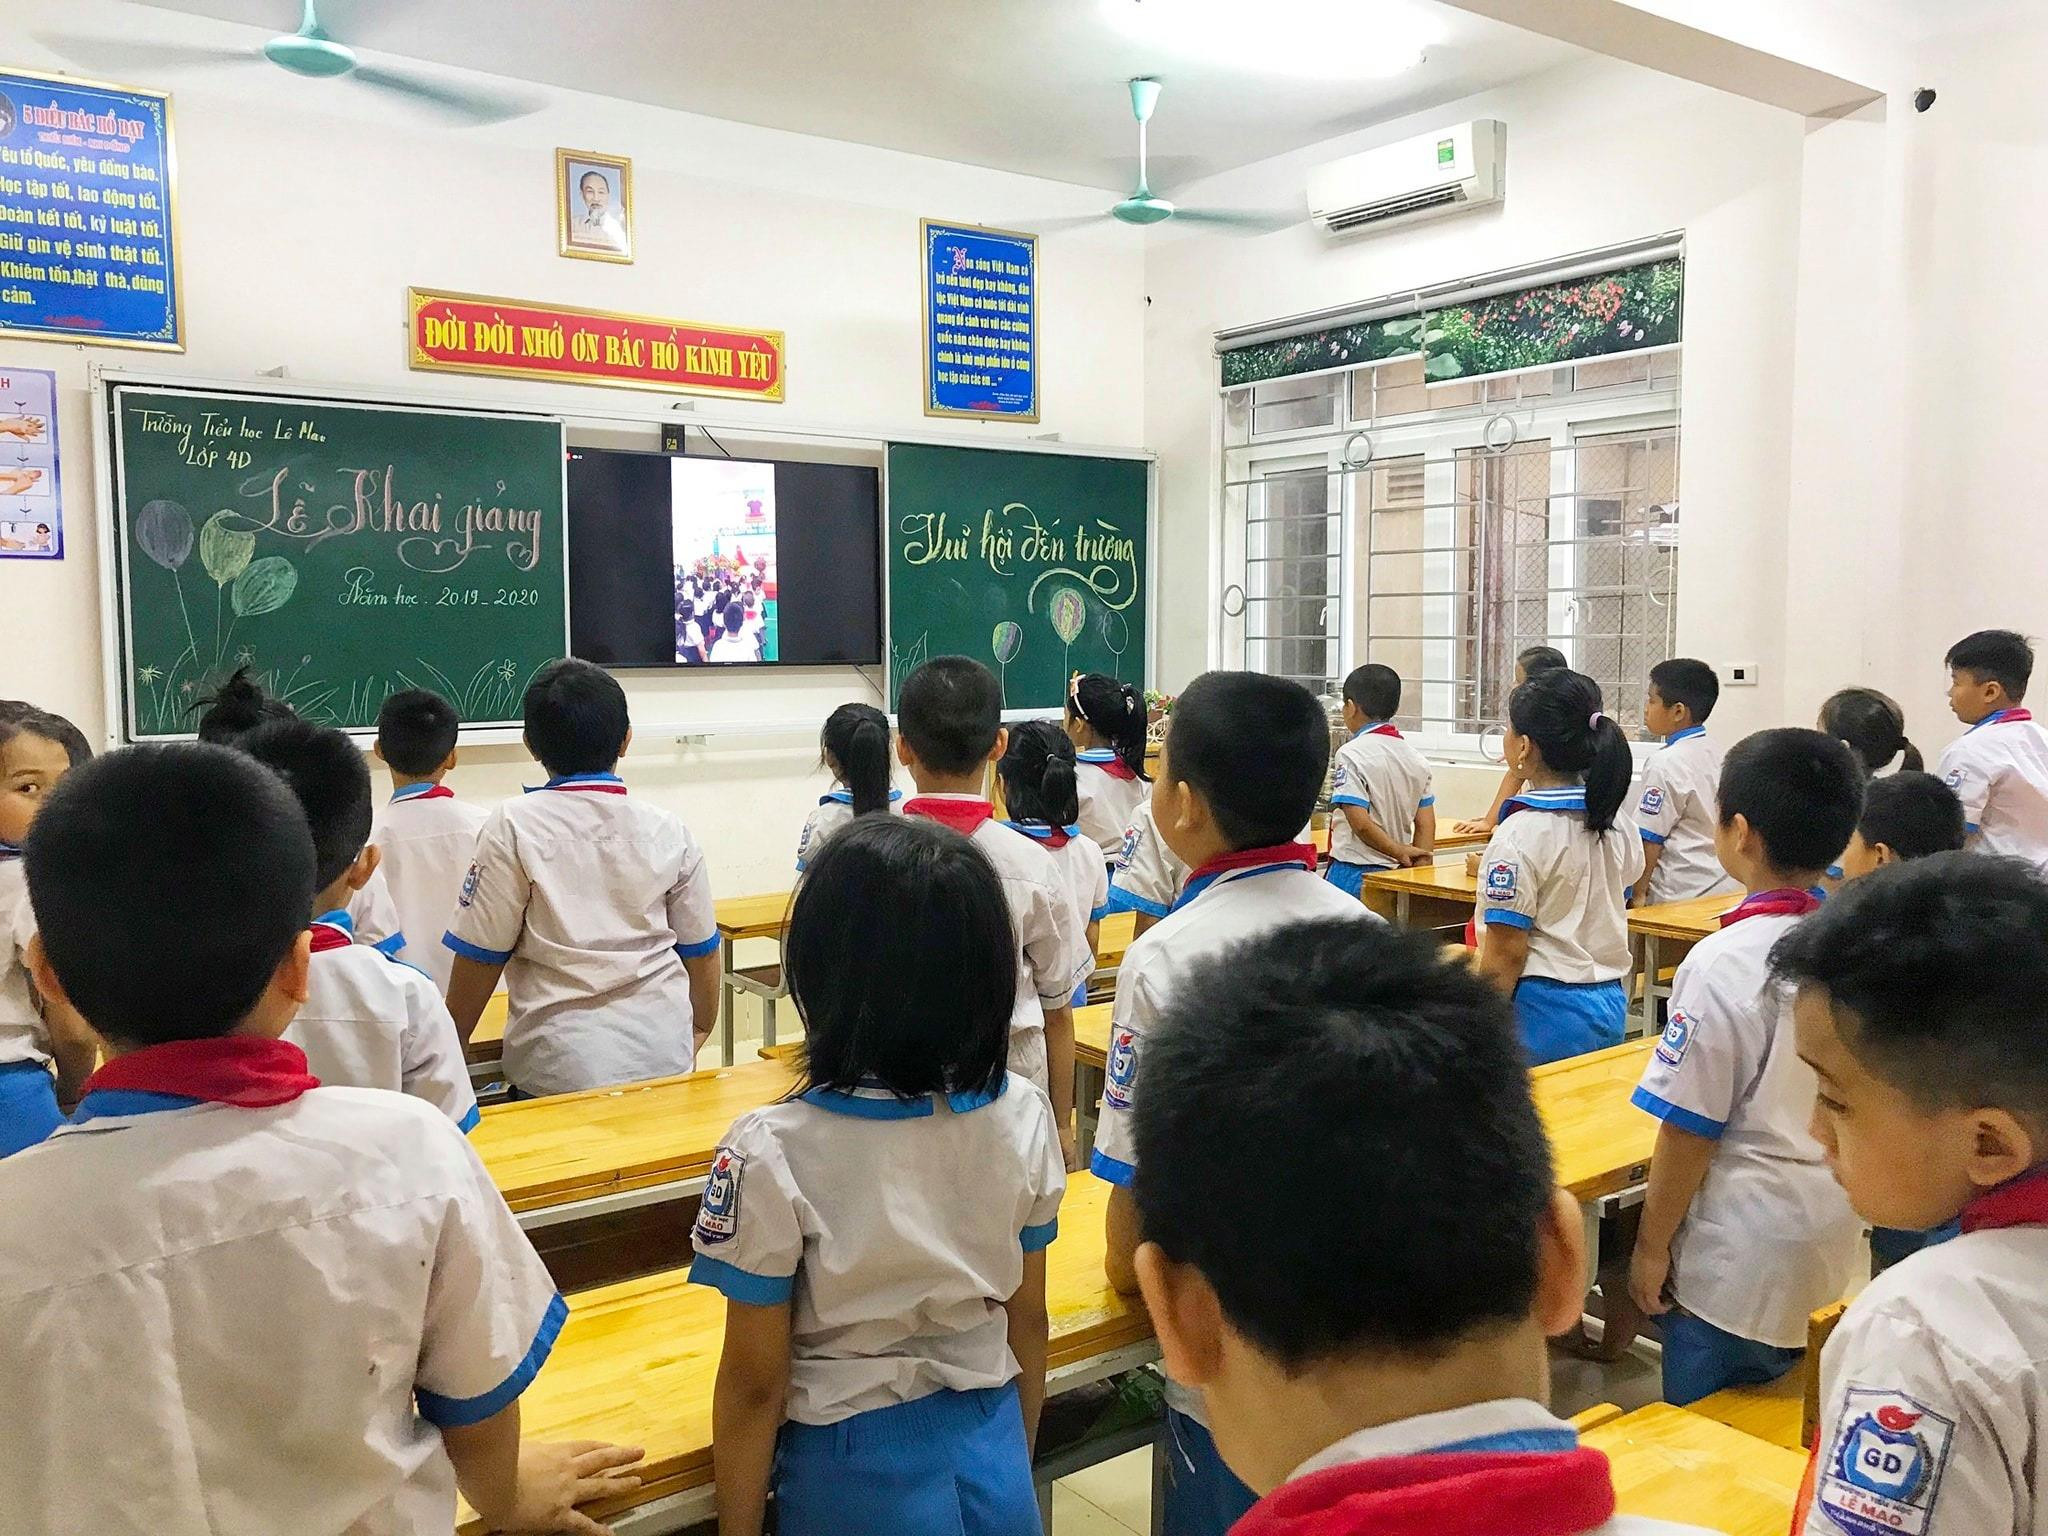 Học sinh ở tại lớp cùng tham gia chào cờ. Ảnh: Tiểu học Lê Mao